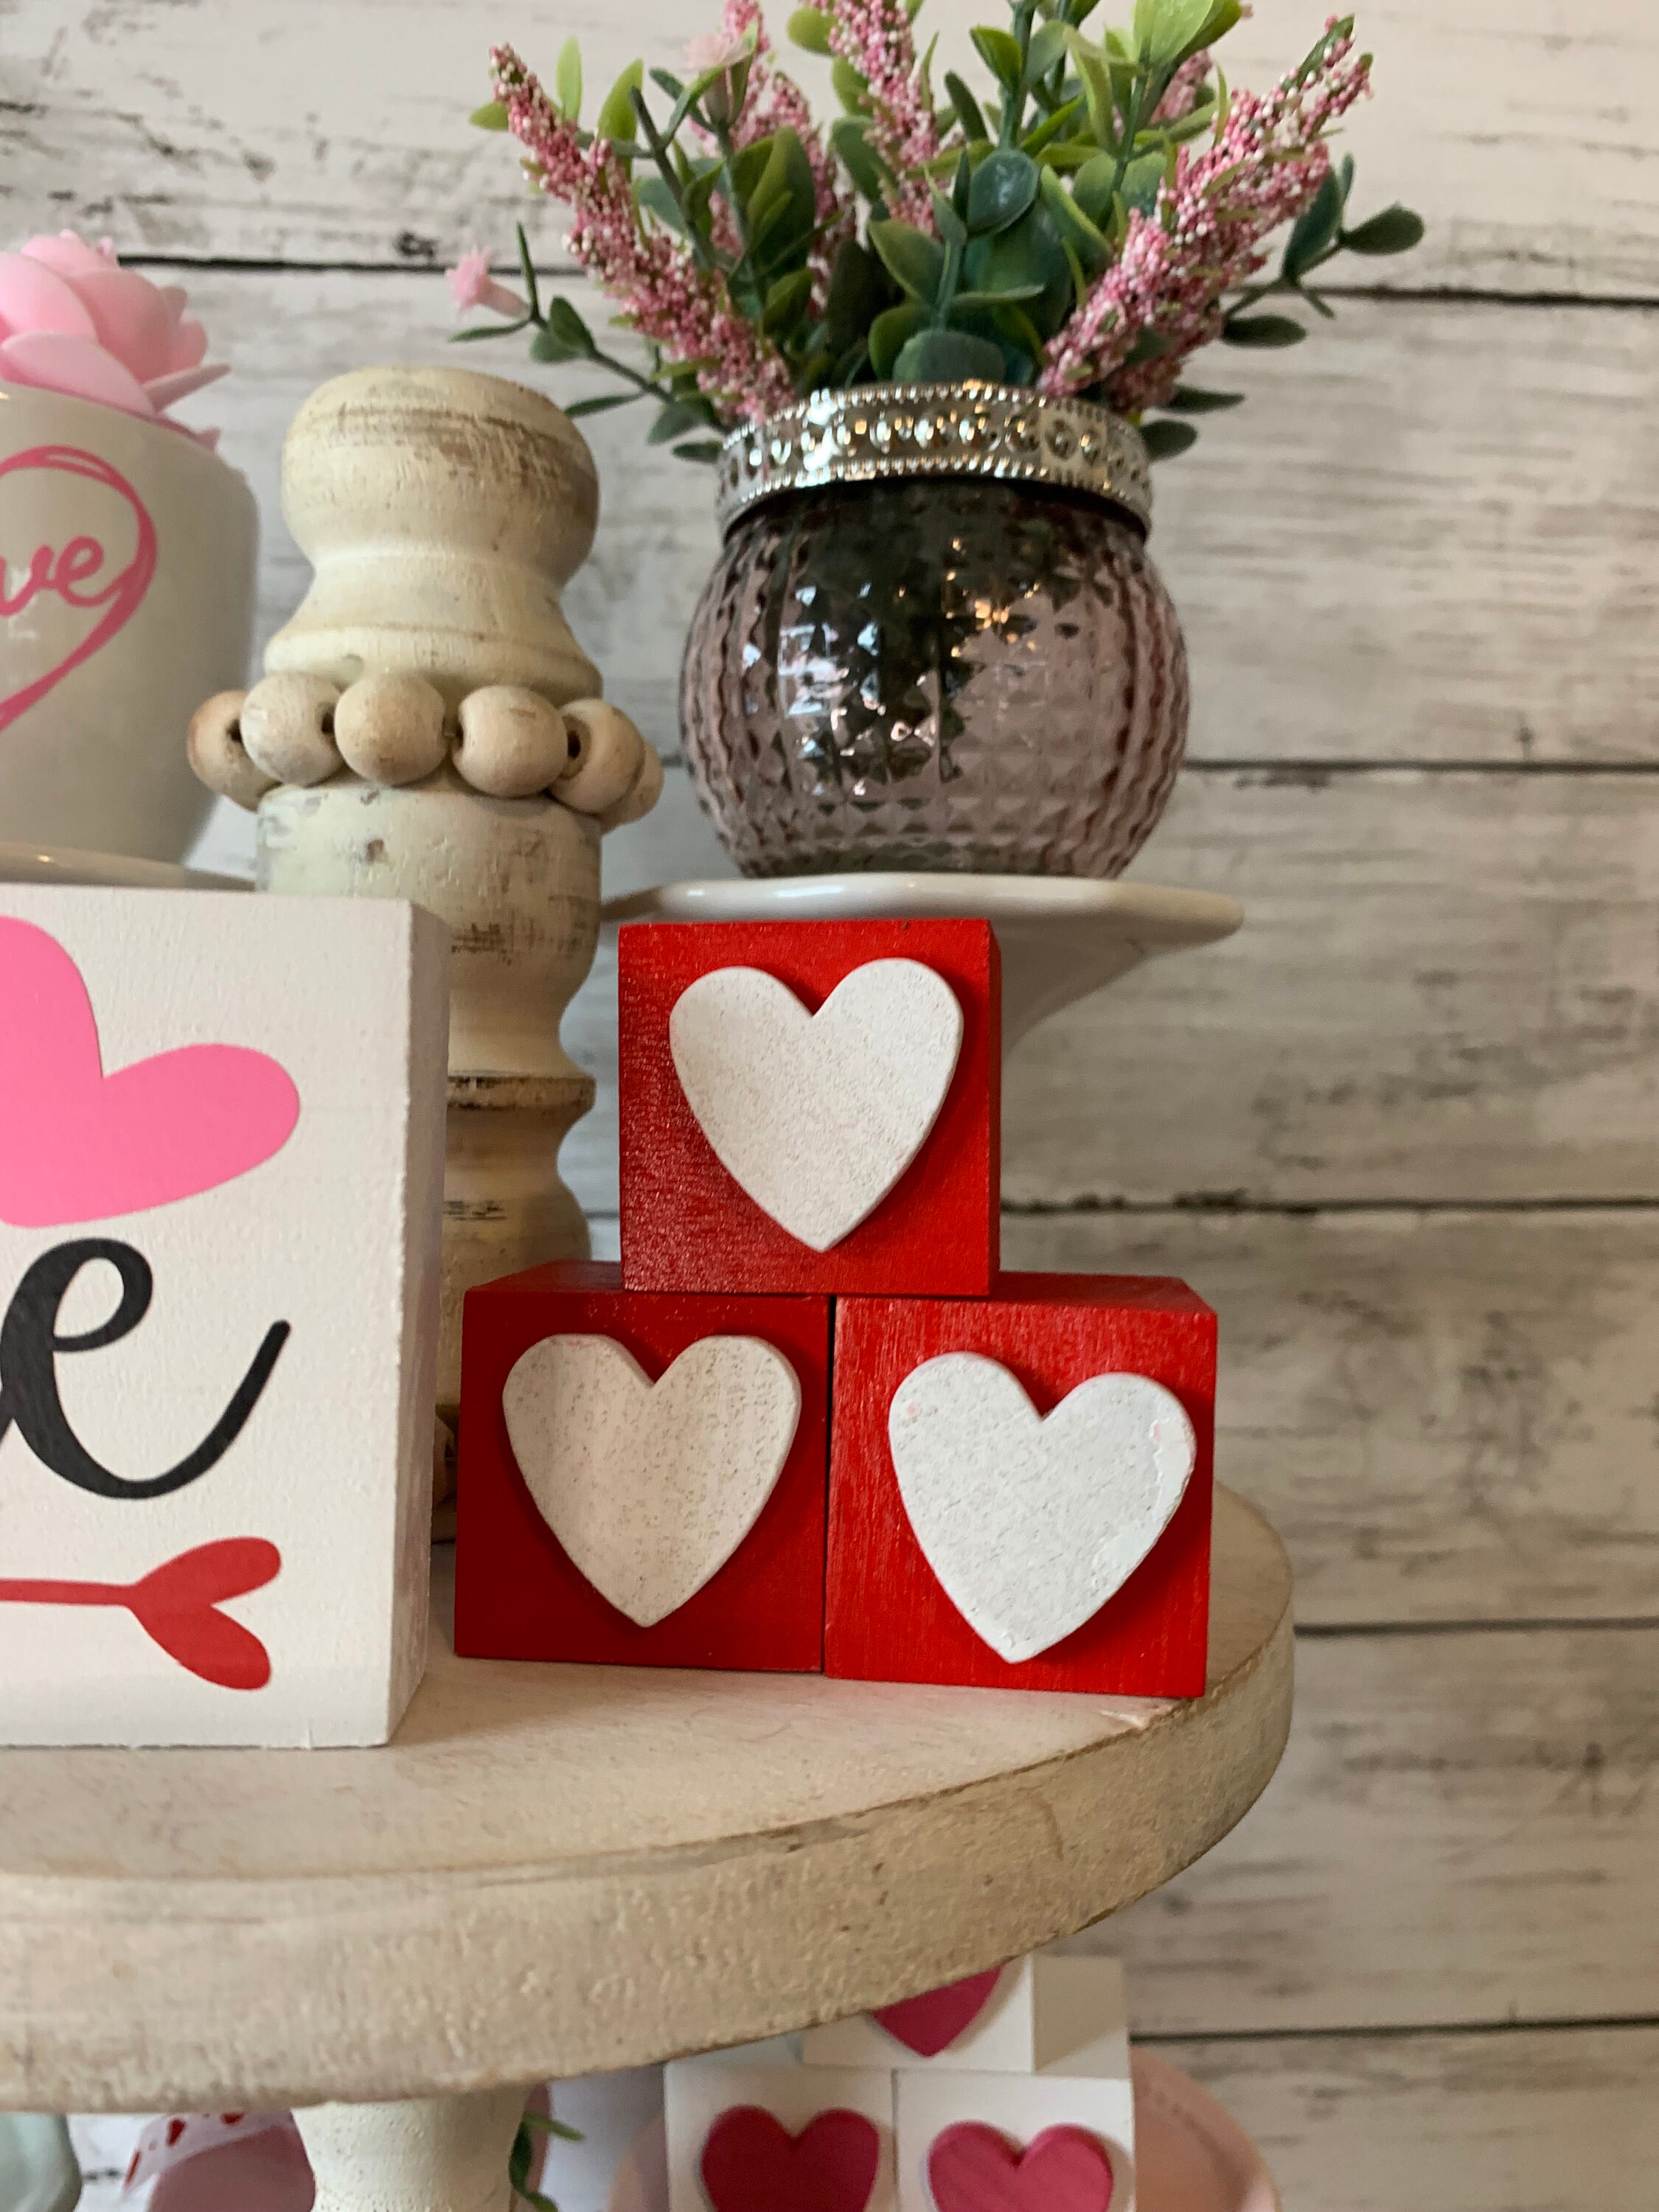 Valentine Basket Insert, Valentine Wood Project, Valentine Tiered Tray  Decor, Valentine Coffee Bar Decor, Valentine Chocolates for Display 